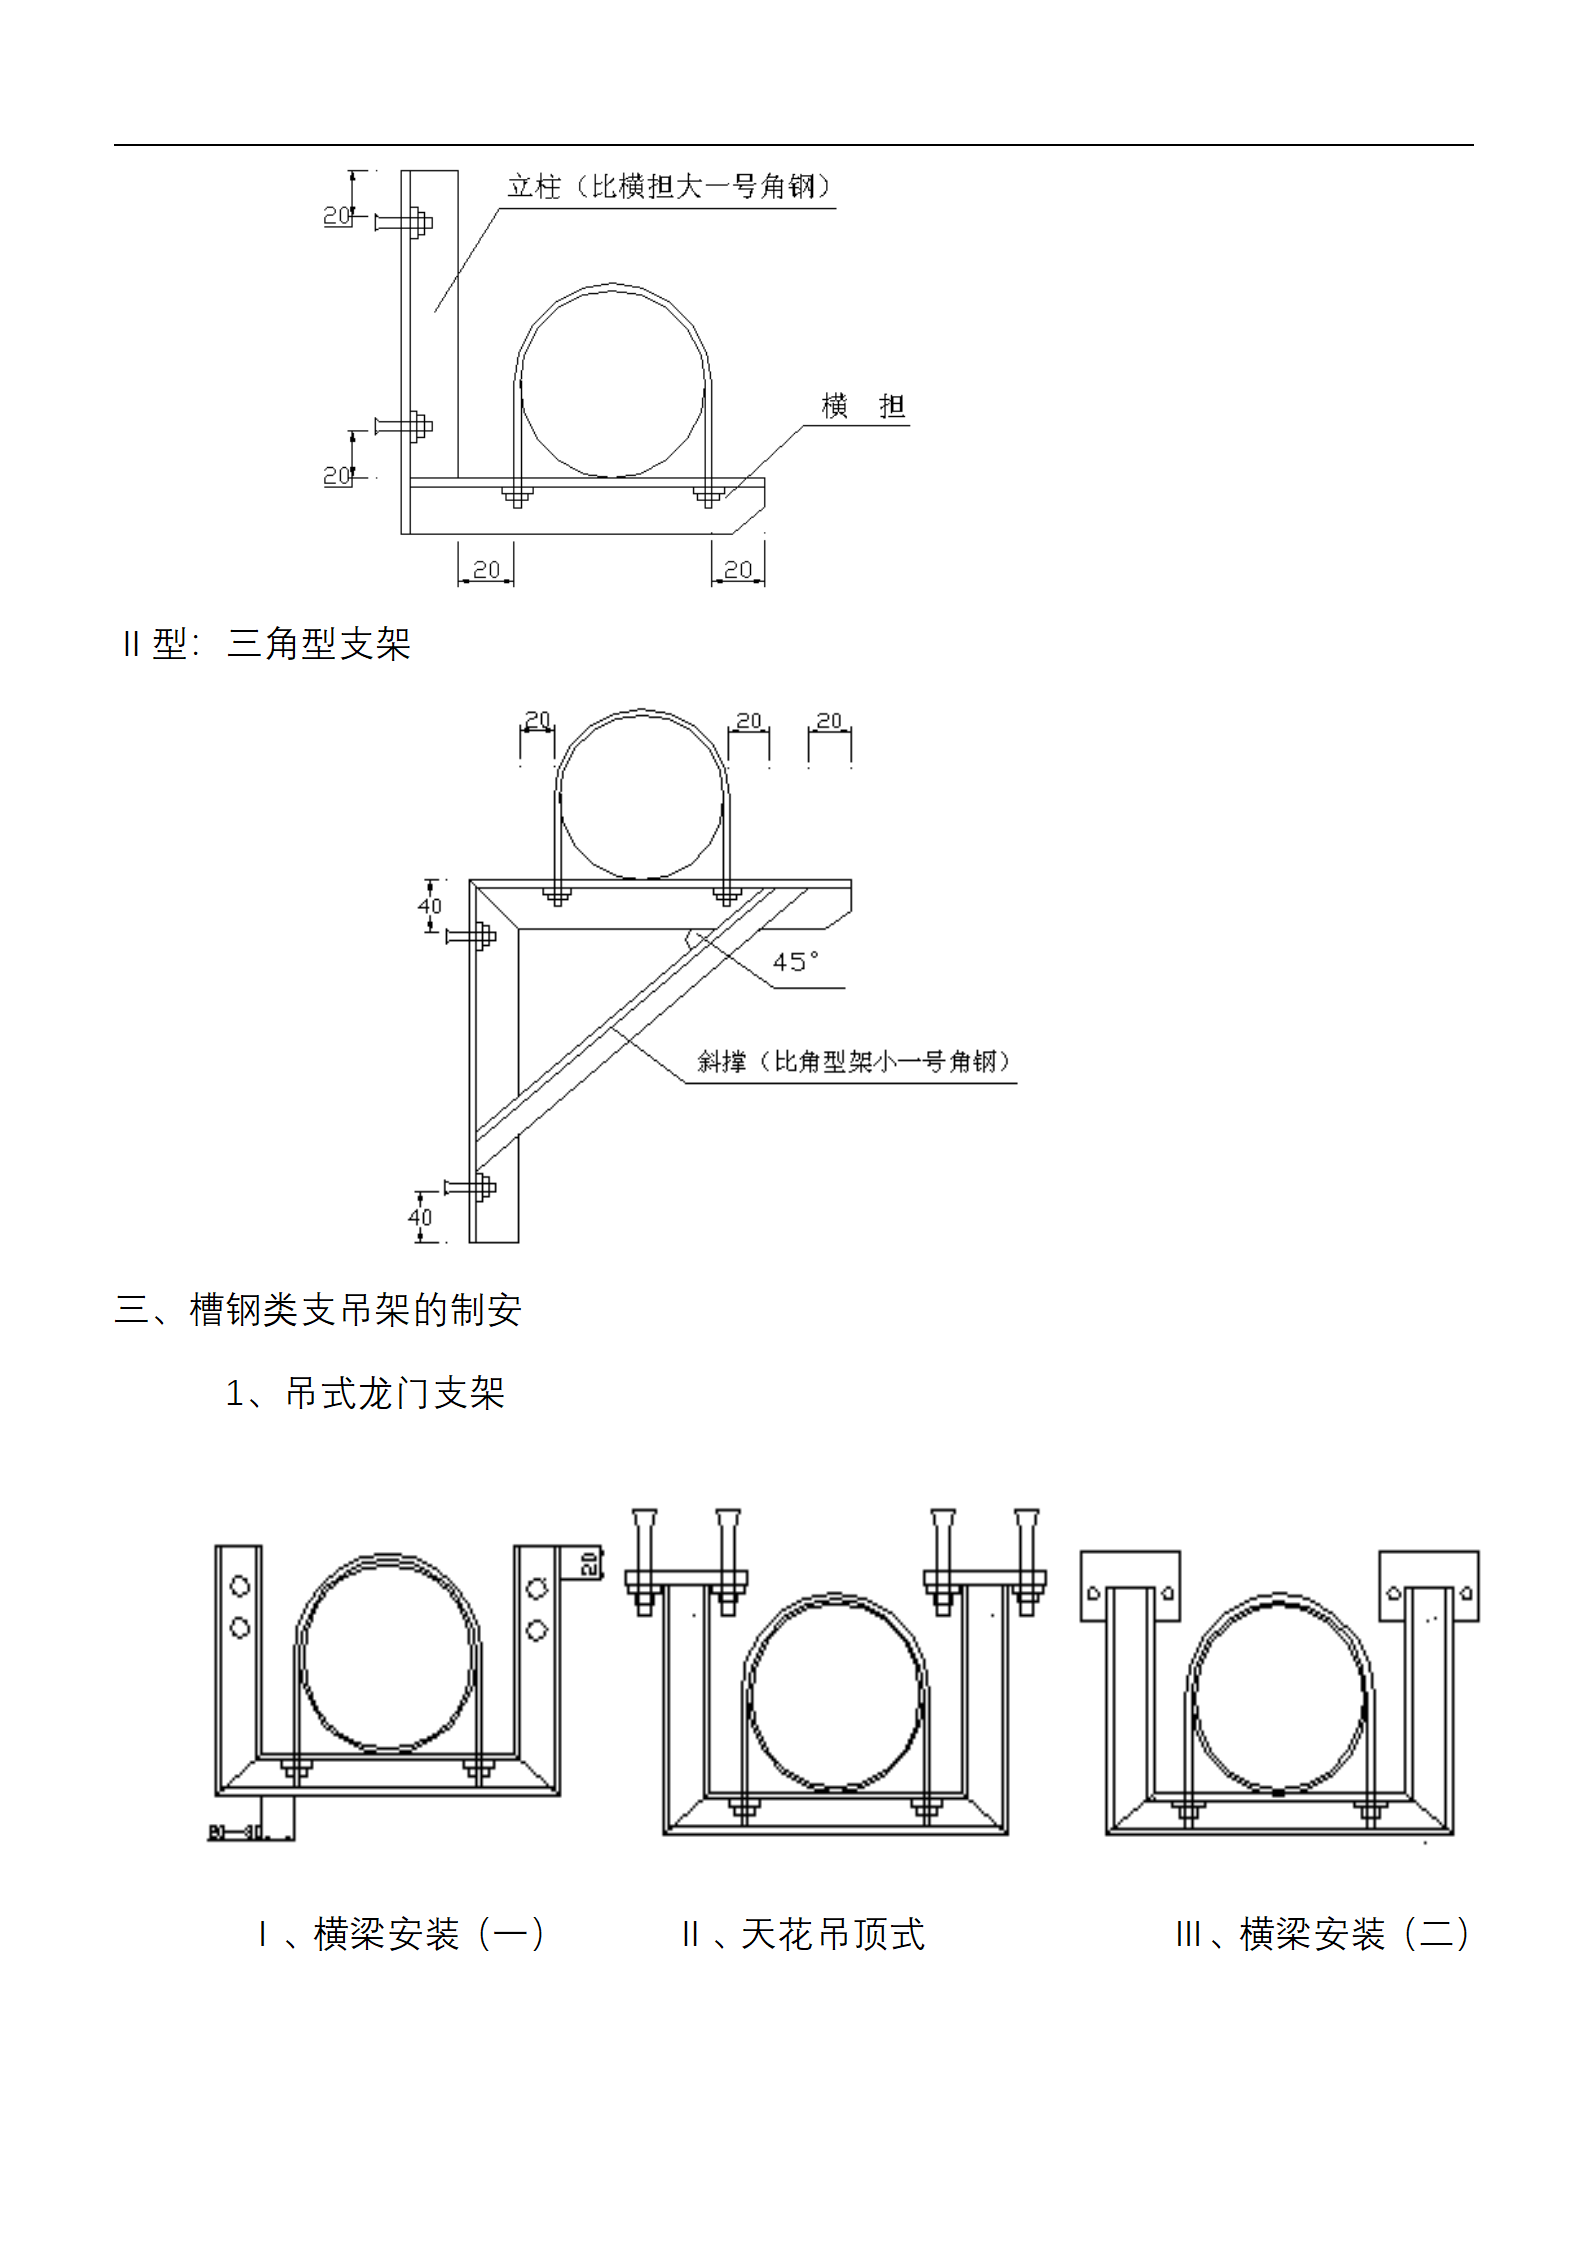 钢类、槽钢类、角钢类管道支架制作安装标准插图(5)